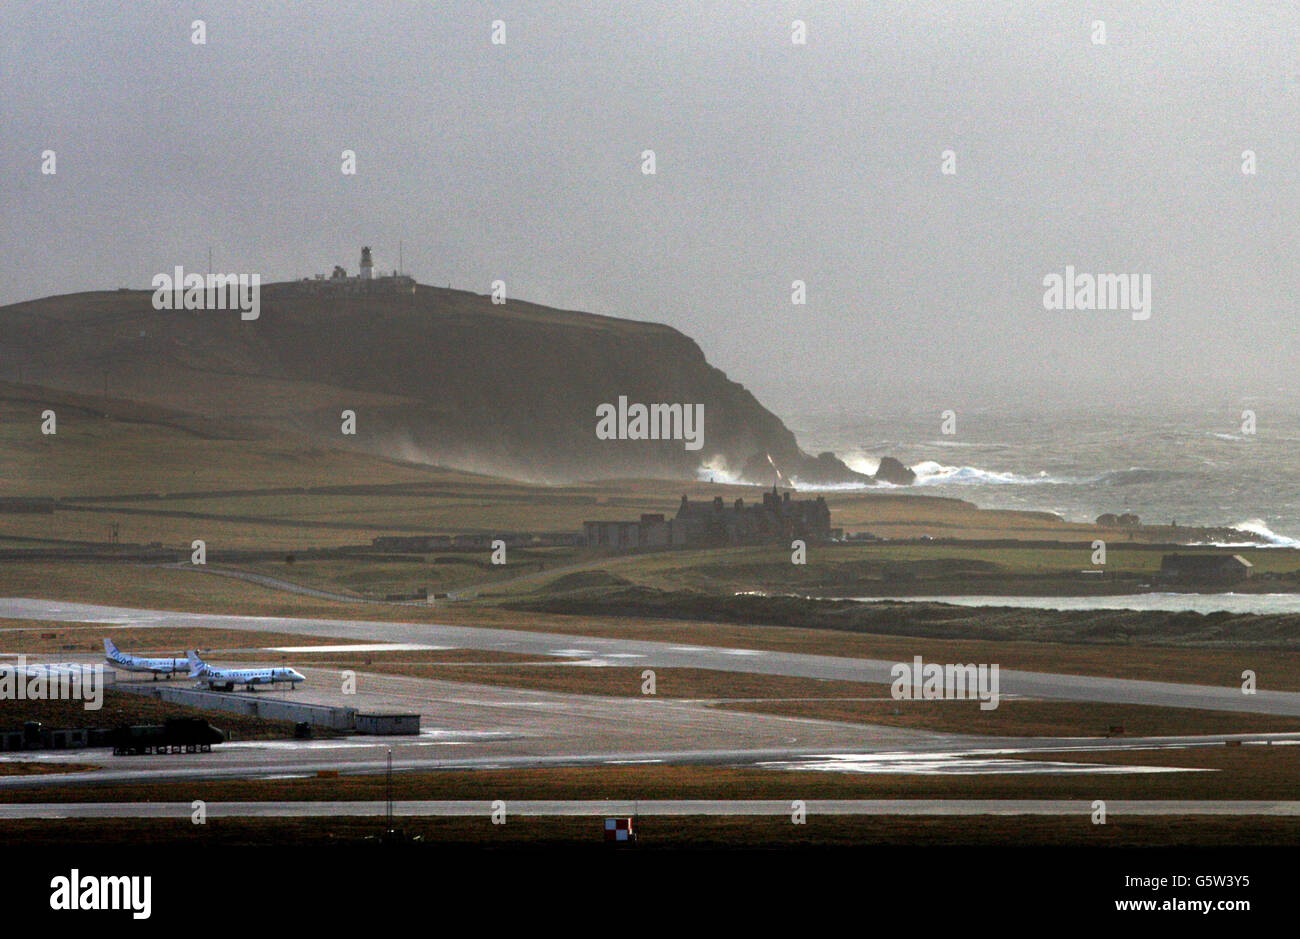 Stock de voyage - Shetland Isles.Aéroport de Shetland à Sumburgh, en Écosse. Banque D'Images